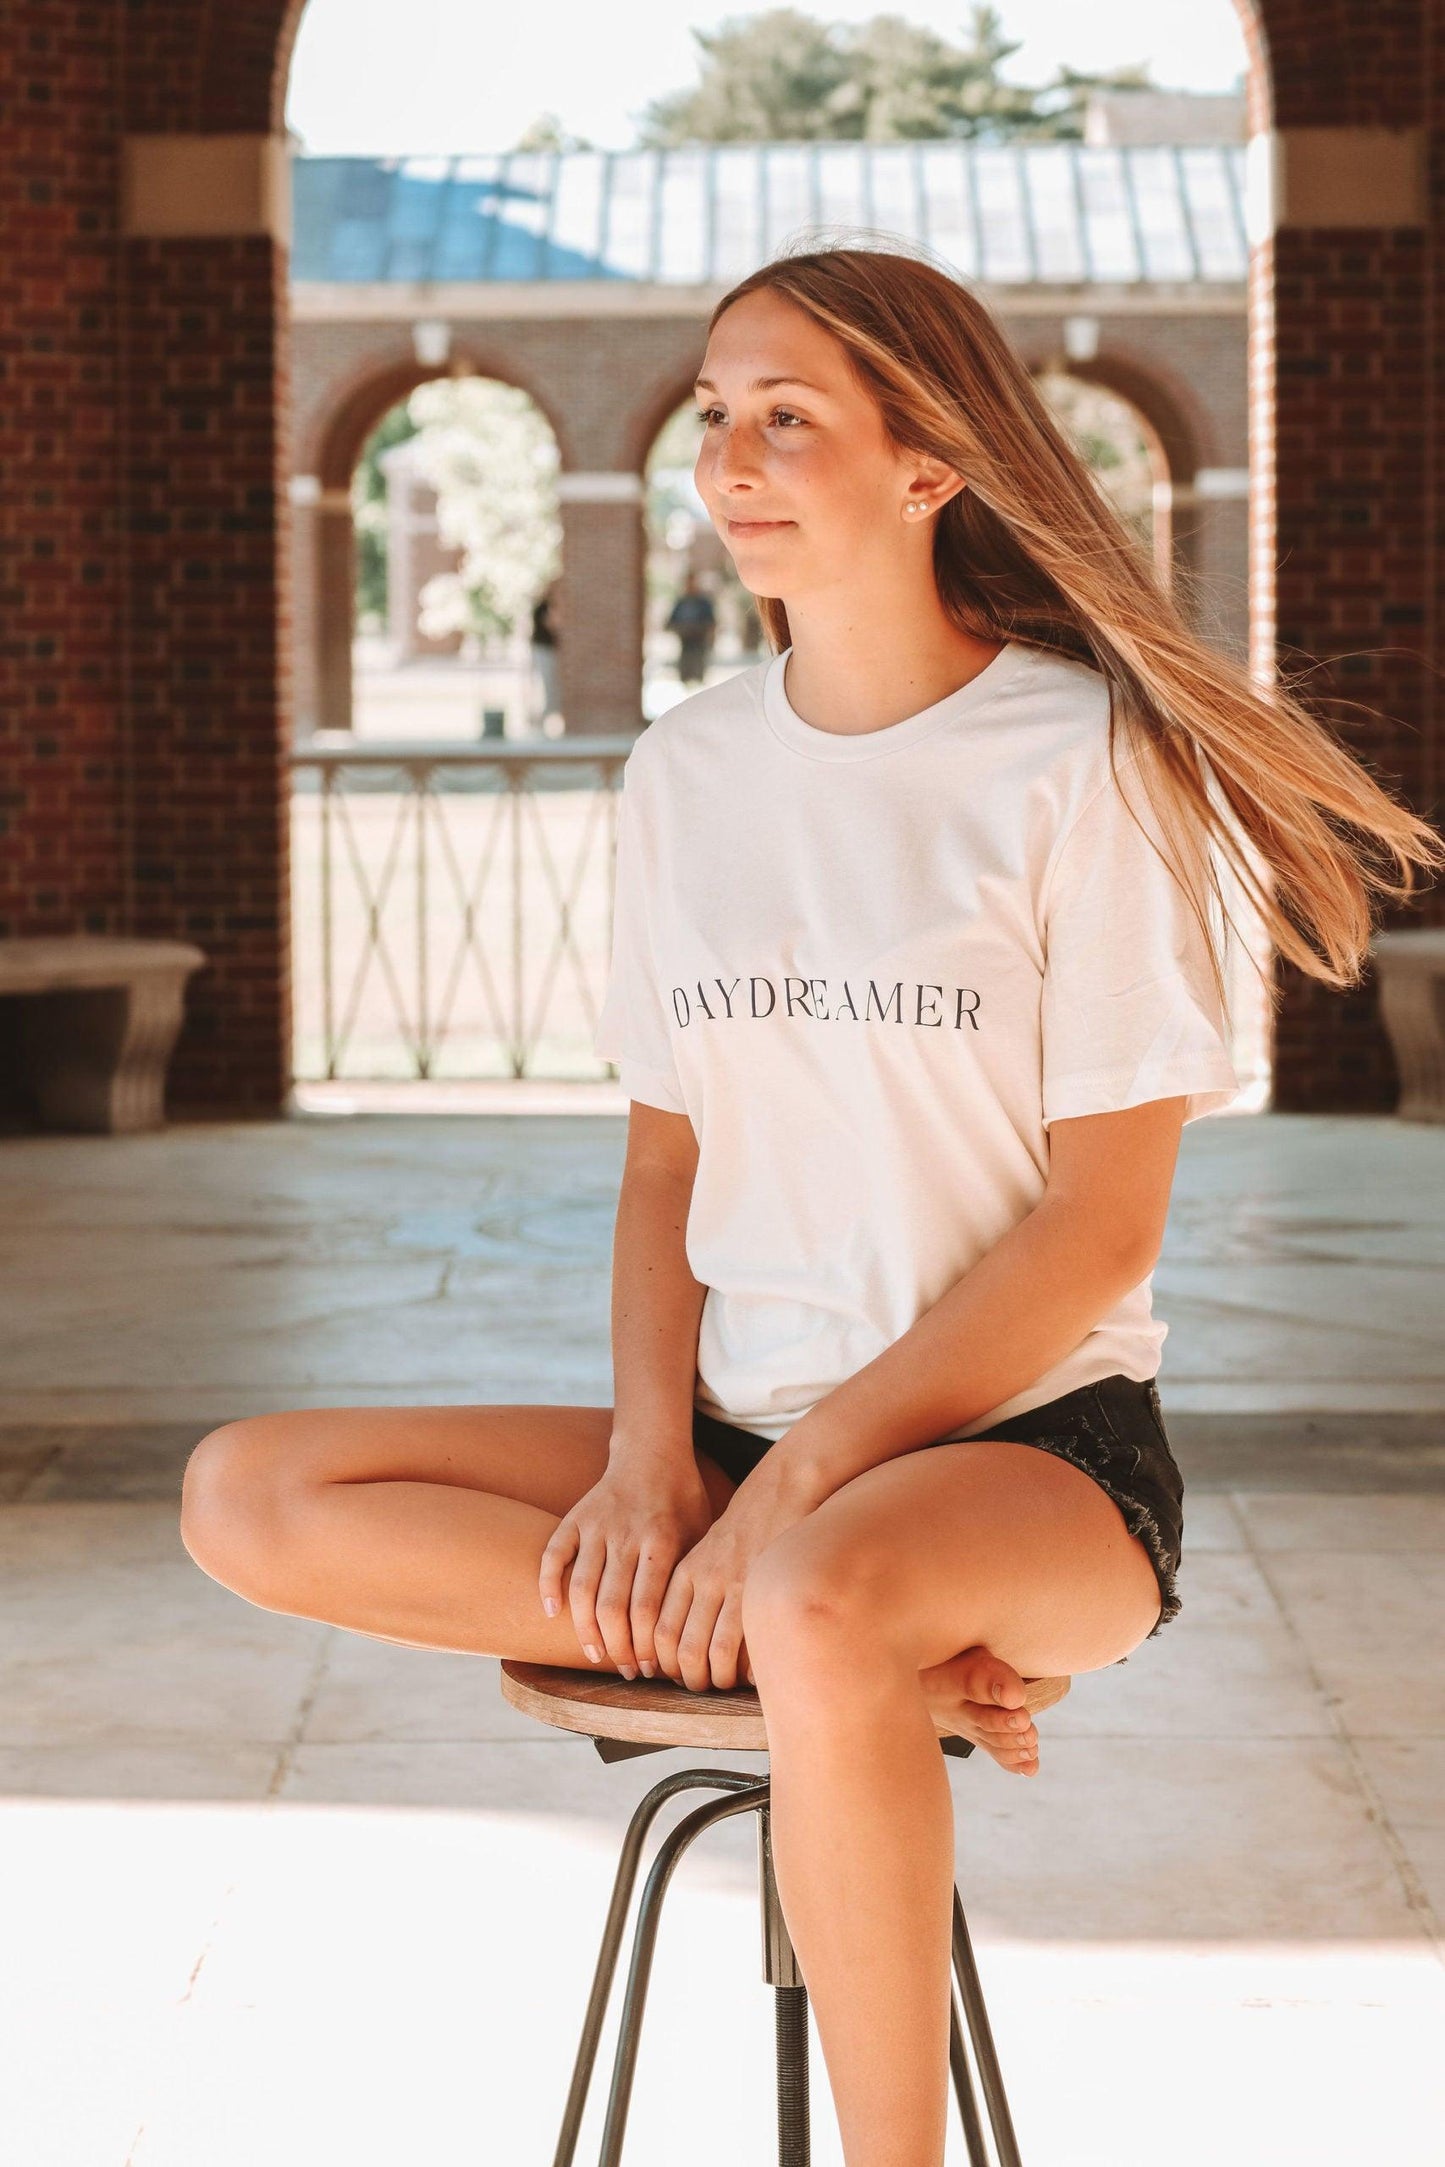 Daydreamer T-Shirt - Leah Carolyn Designs